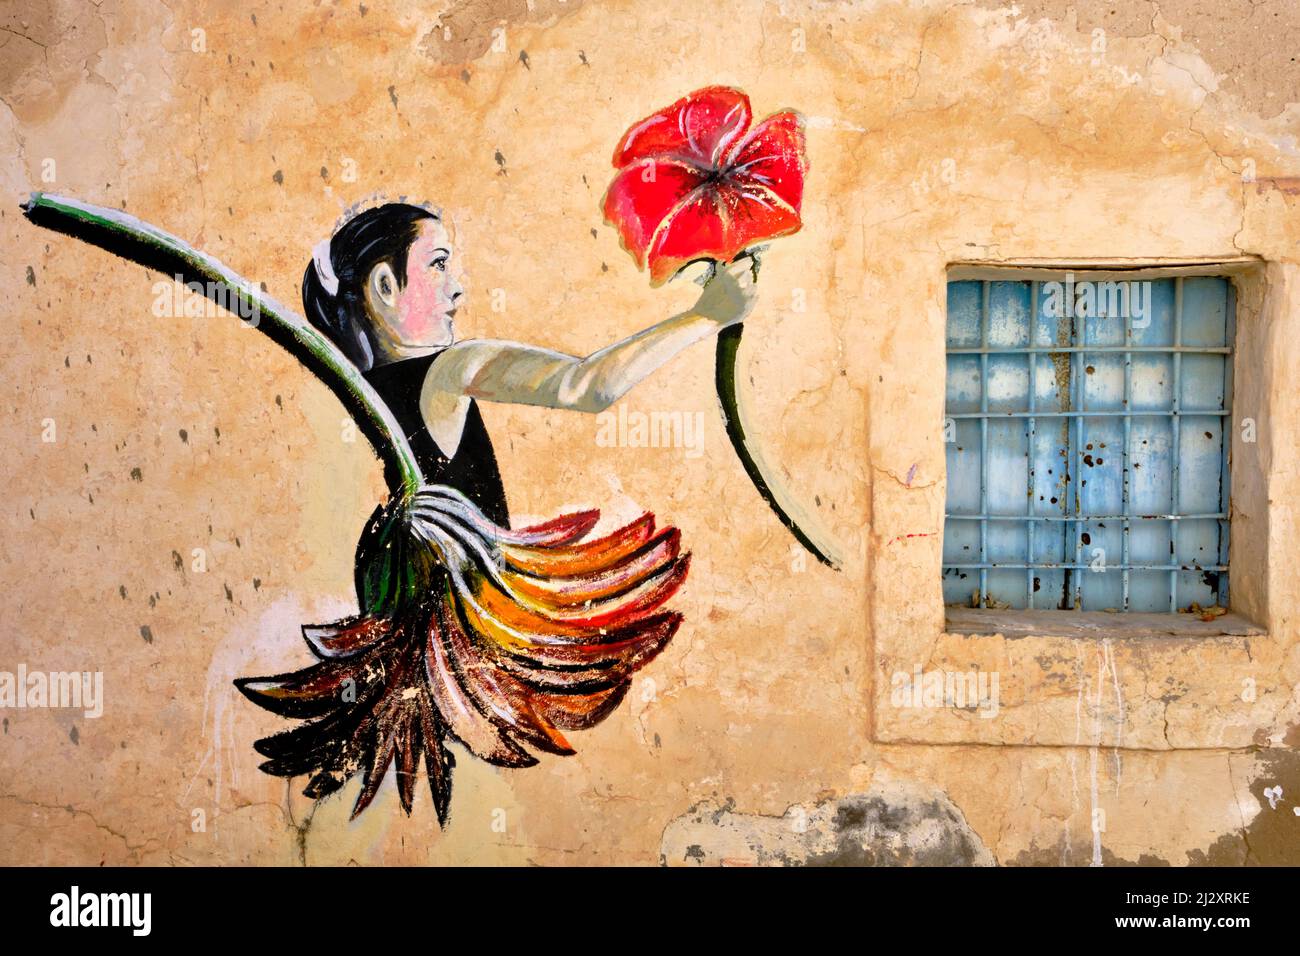 Tunisie, région sud, gouvernorat de Medenine, île de Djerba, village d'Erriadh, Djerbahood, village investi par des artistes de rue Banque D'Images